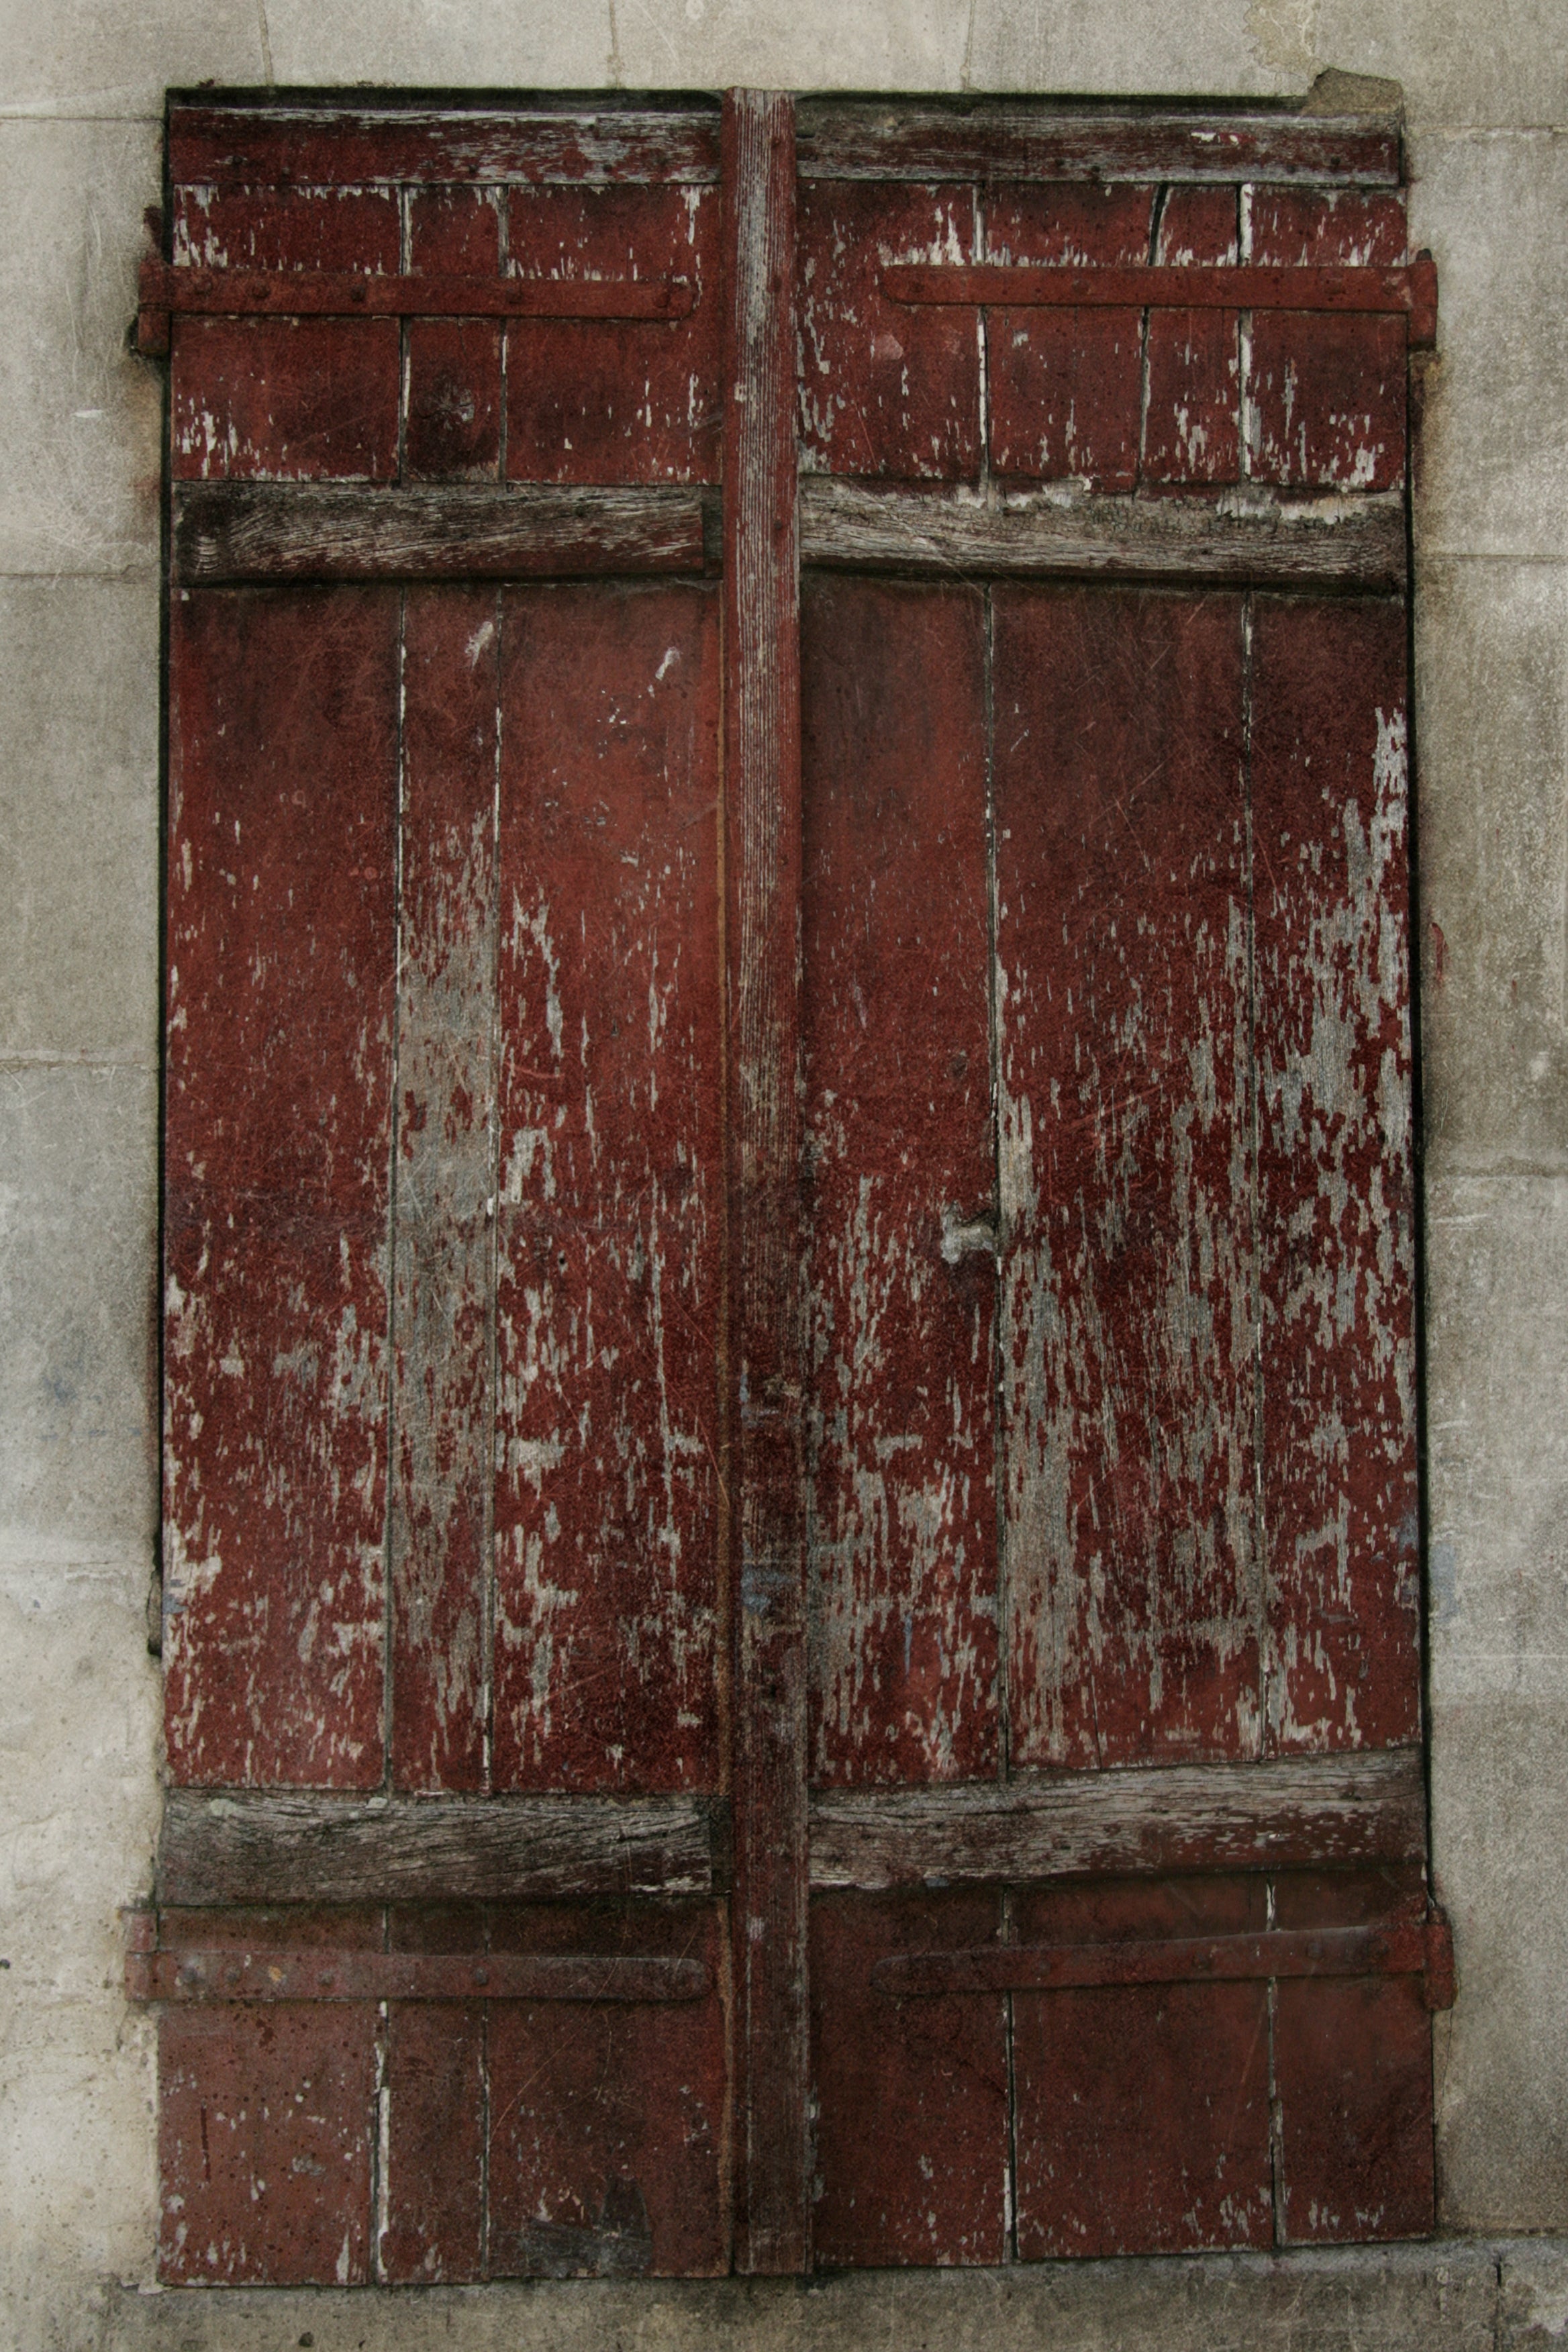 Bourgogne_Window_1.0.jpg